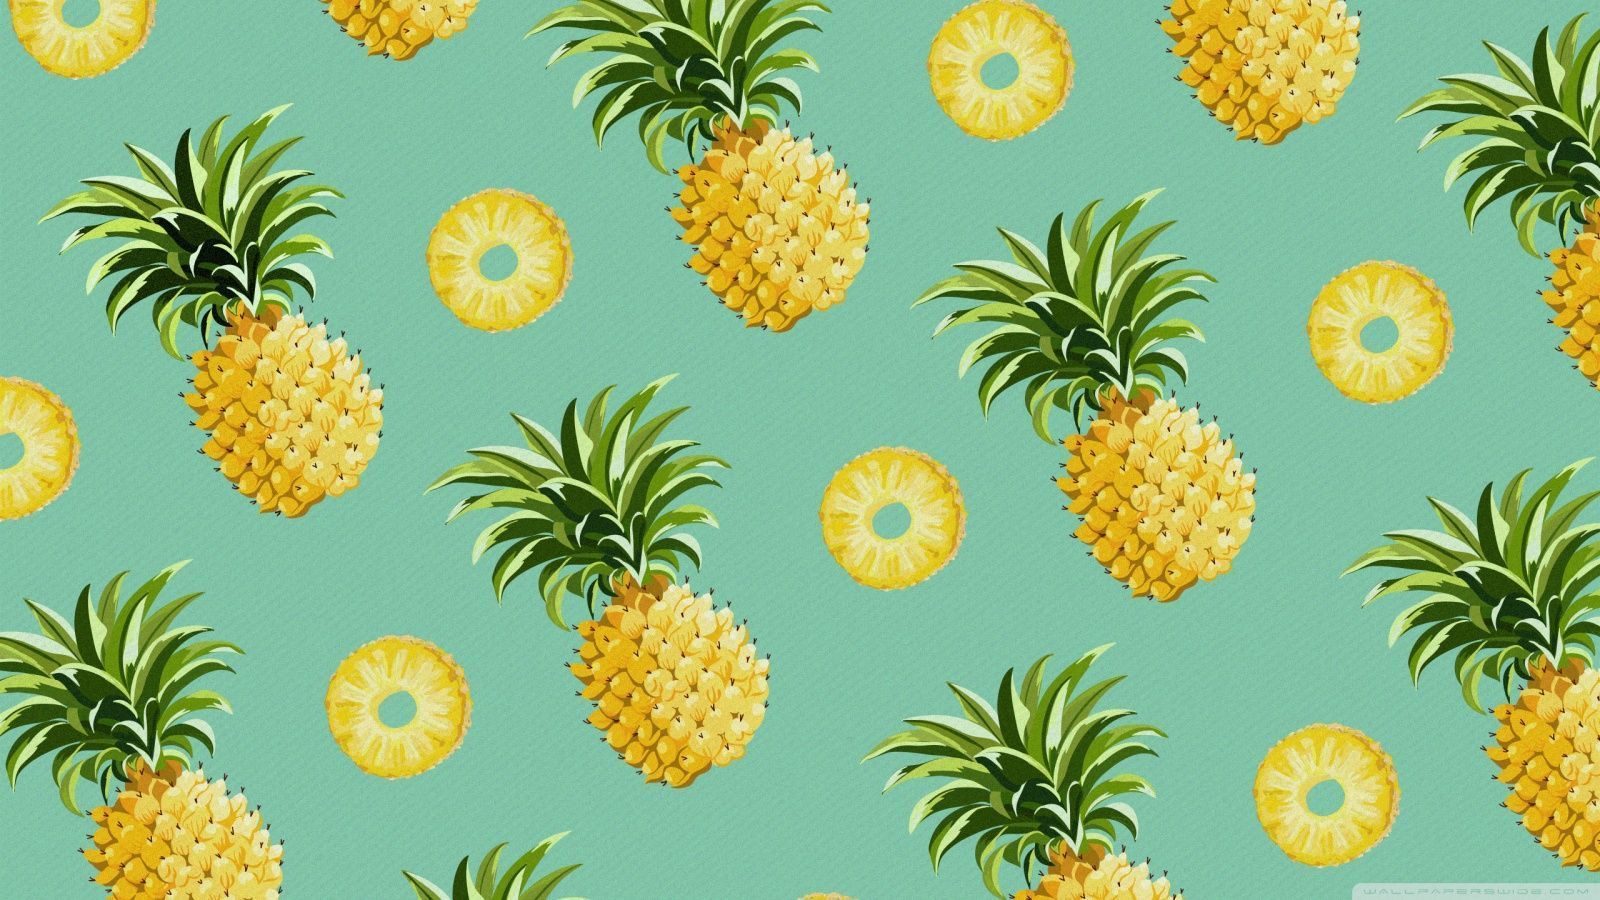 Pineapple Laptop Wallpaper Free Pineapple Laptop